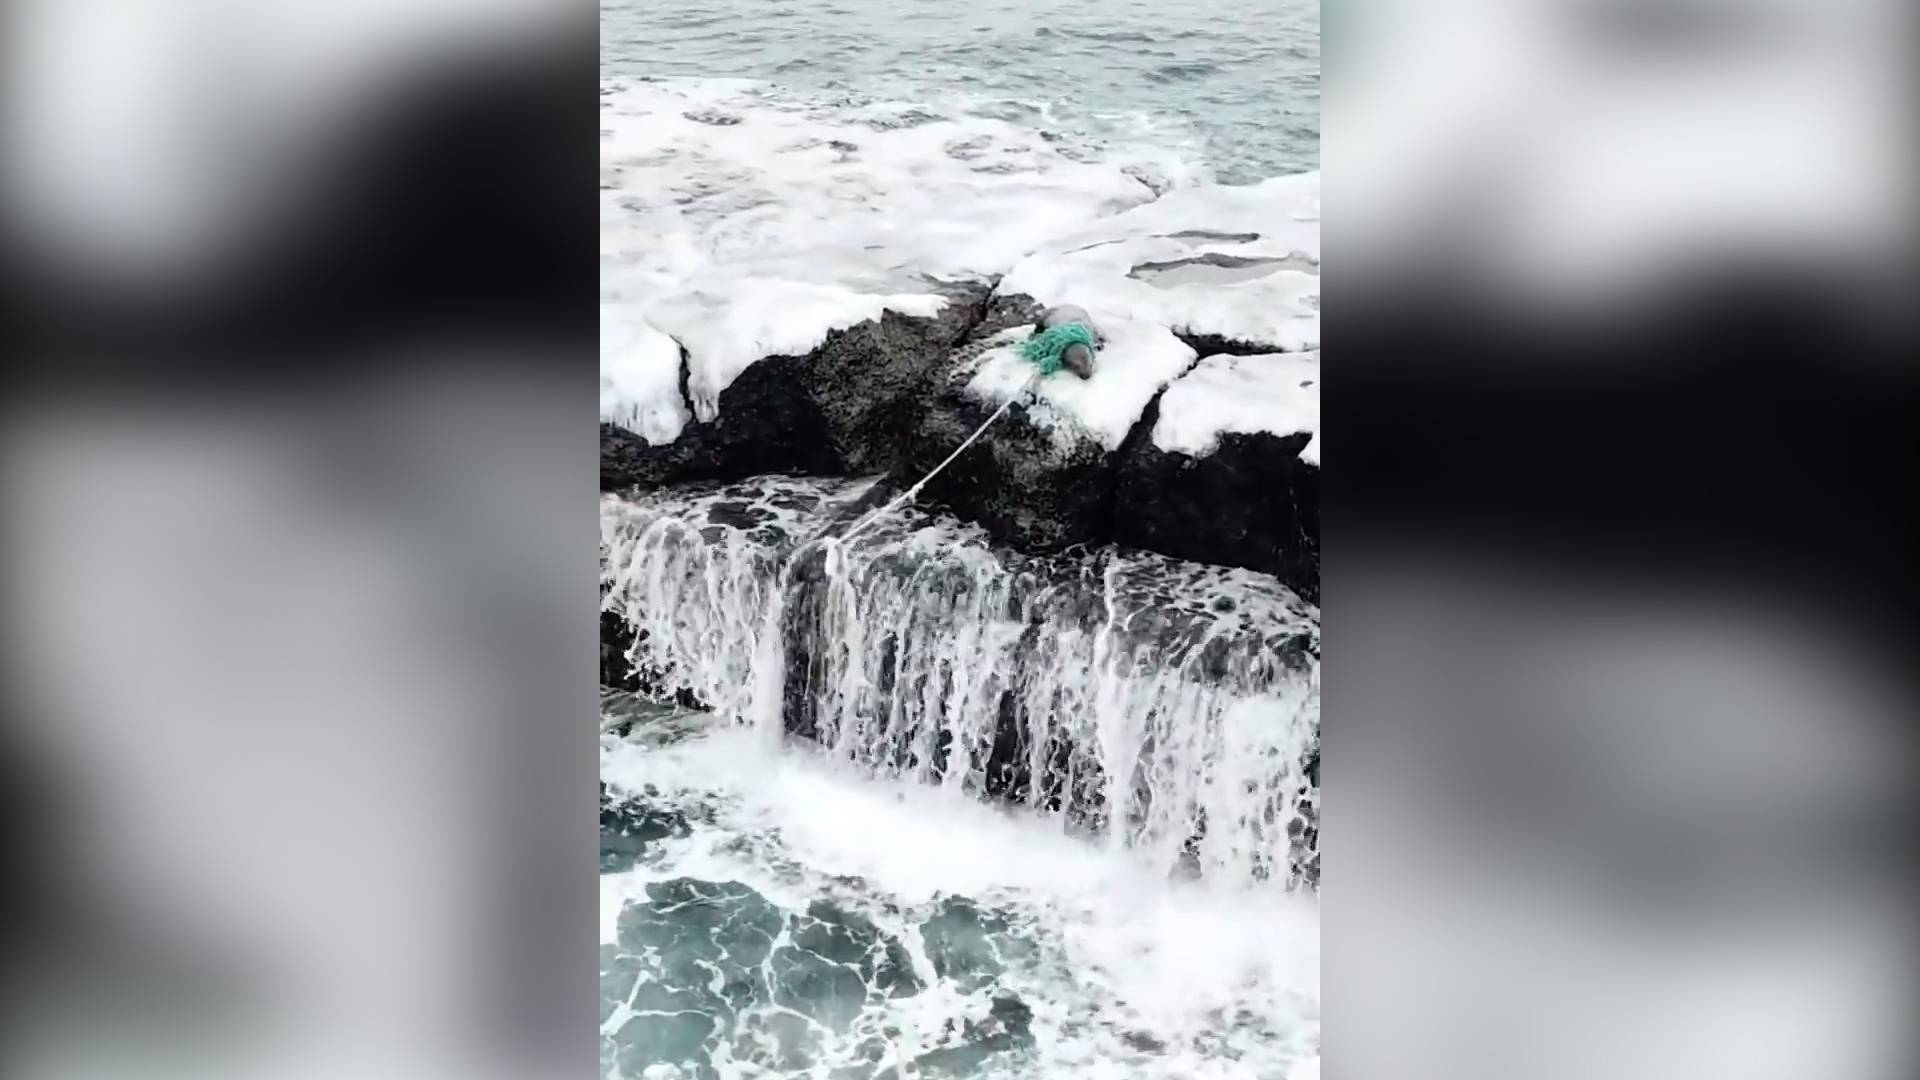 Спасатели помогли запутавшемуся морскому льву освободиться из рыбацких сетей Видео